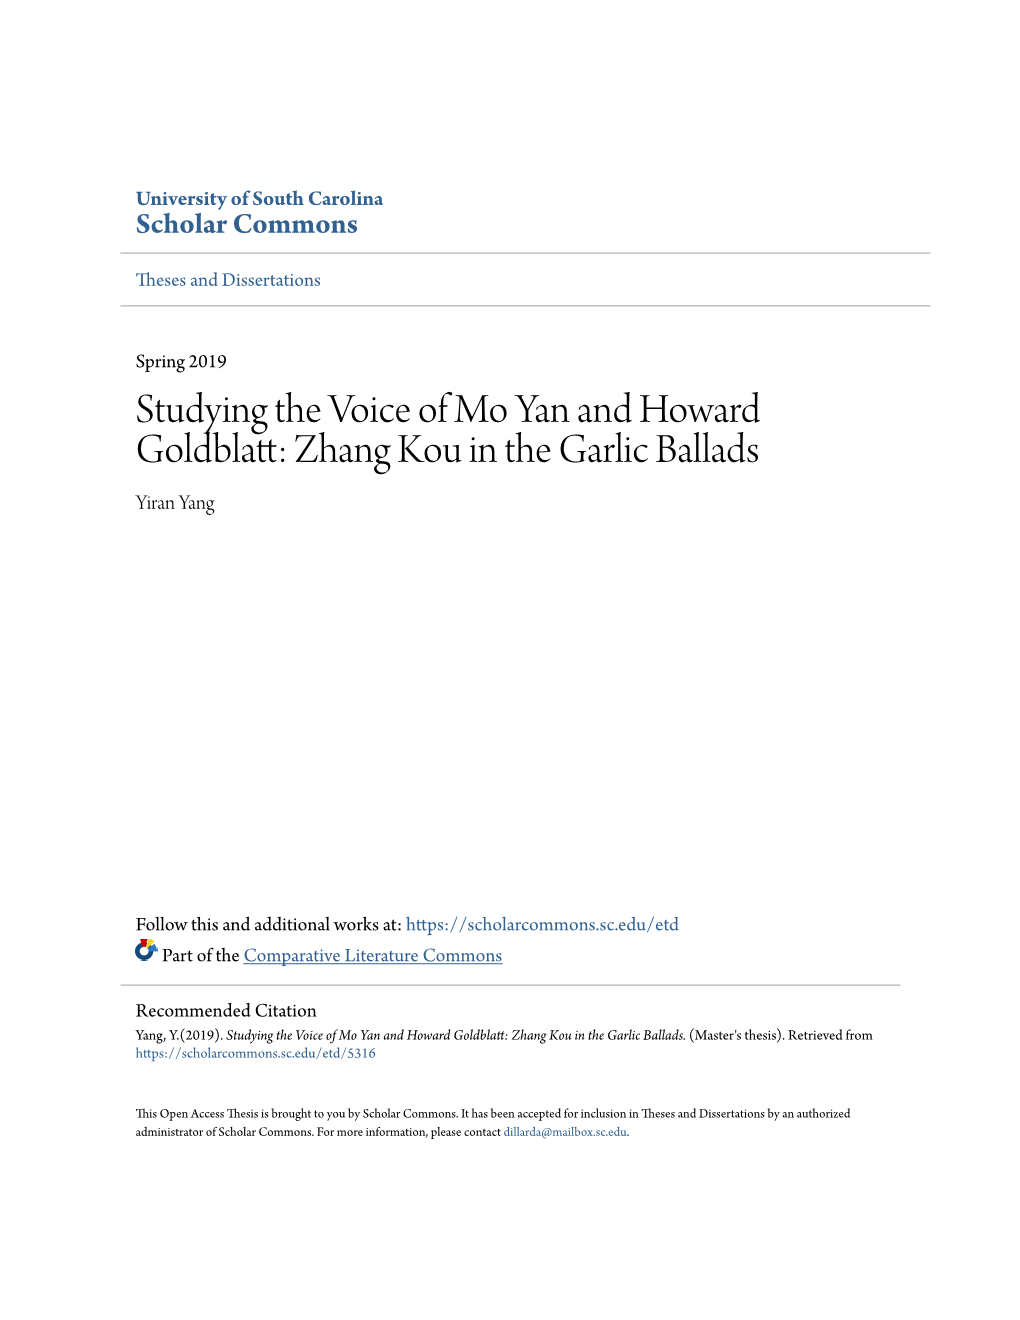 Zhang Kou in the Garlic Ballads Yiran Yang